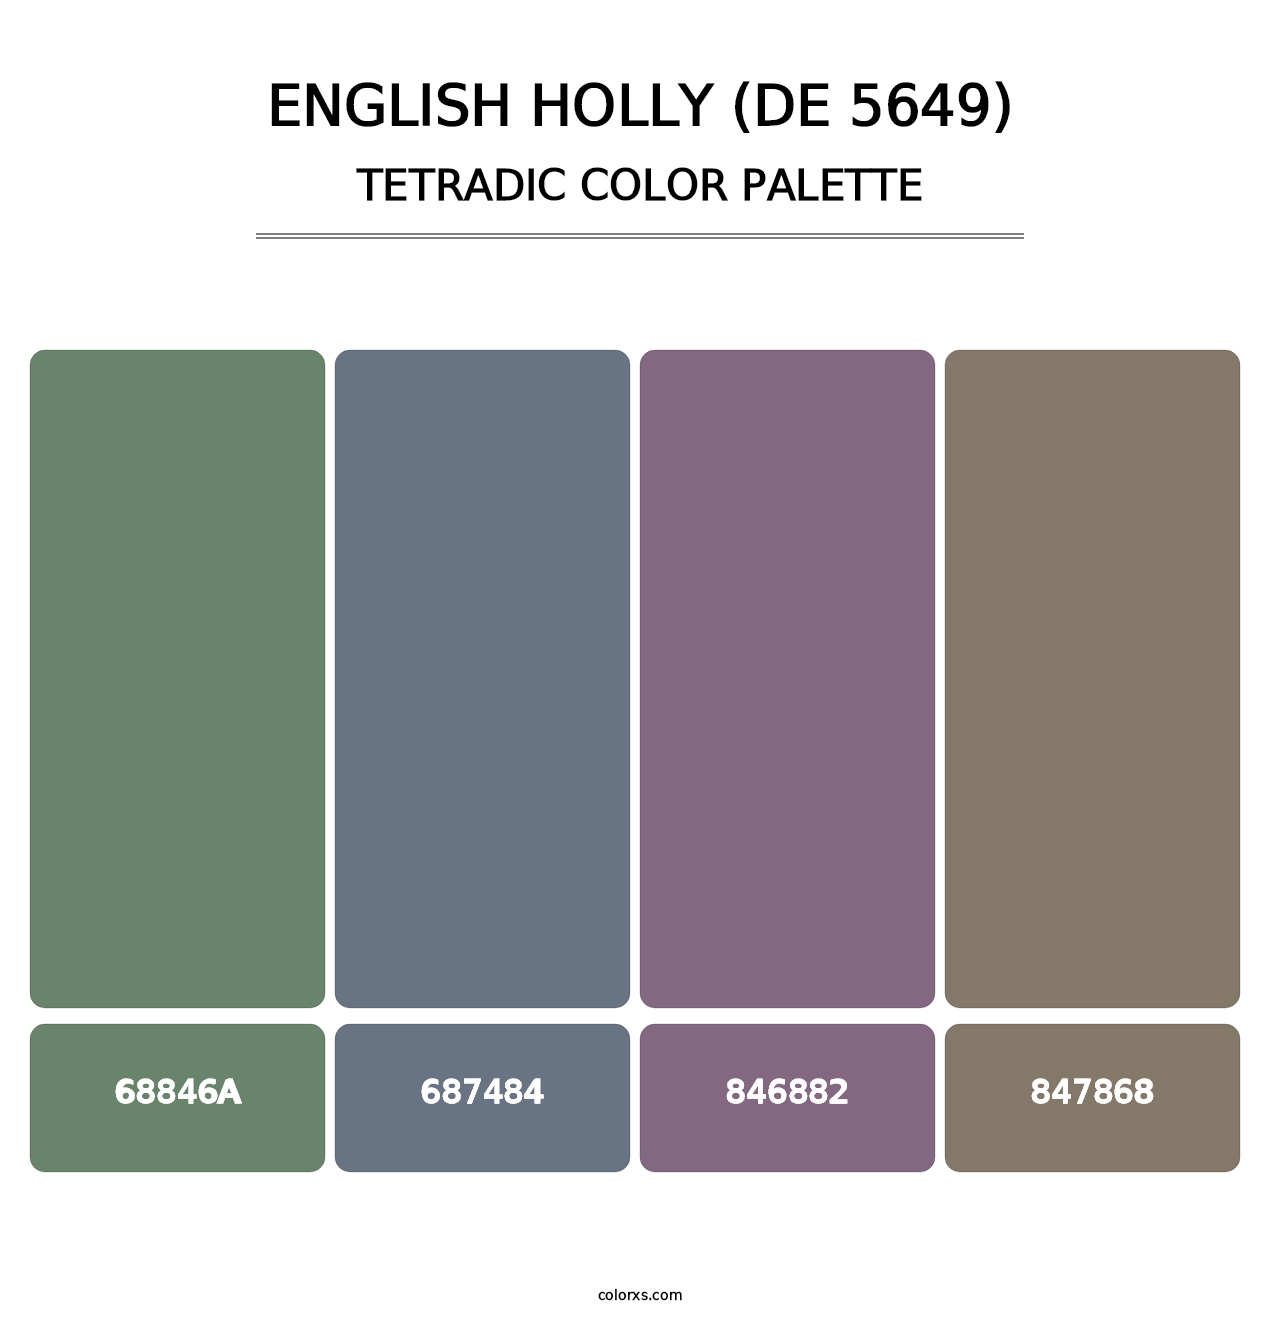 English Holly (DE 5649) - Tetradic Color Palette